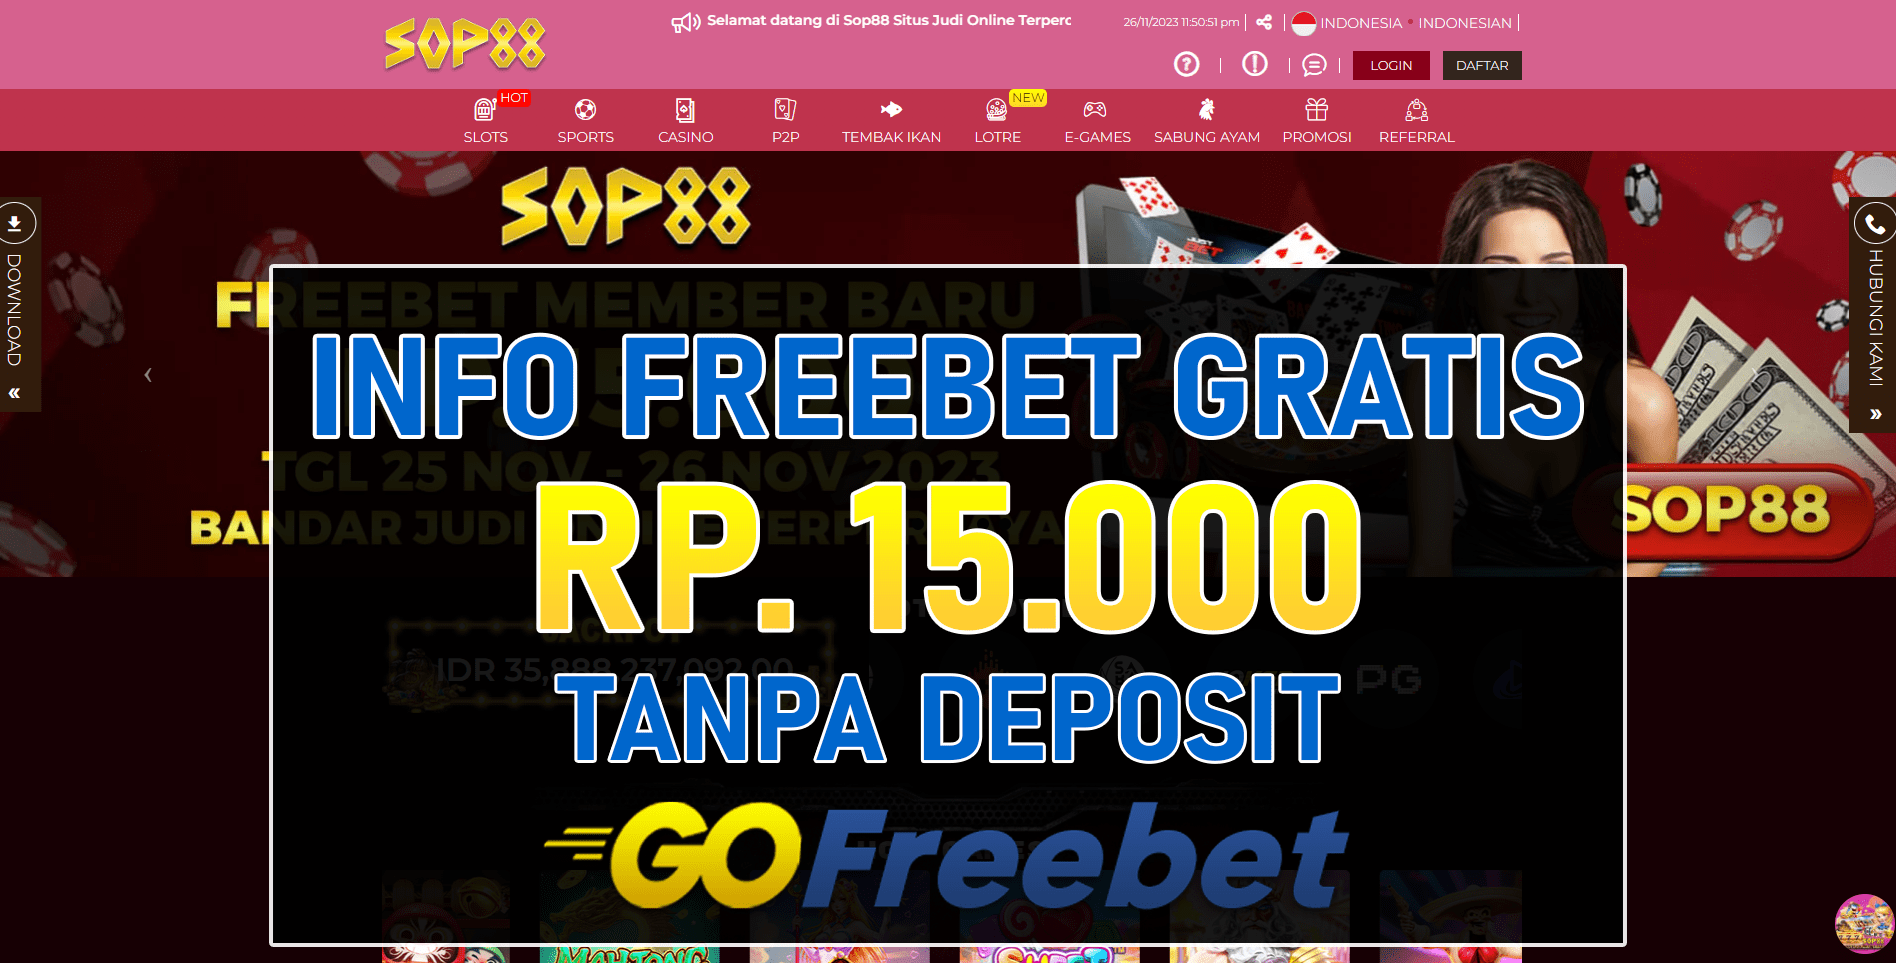 Sop88 Freebet Gratis Rp 15.000 Tanpa Deposit